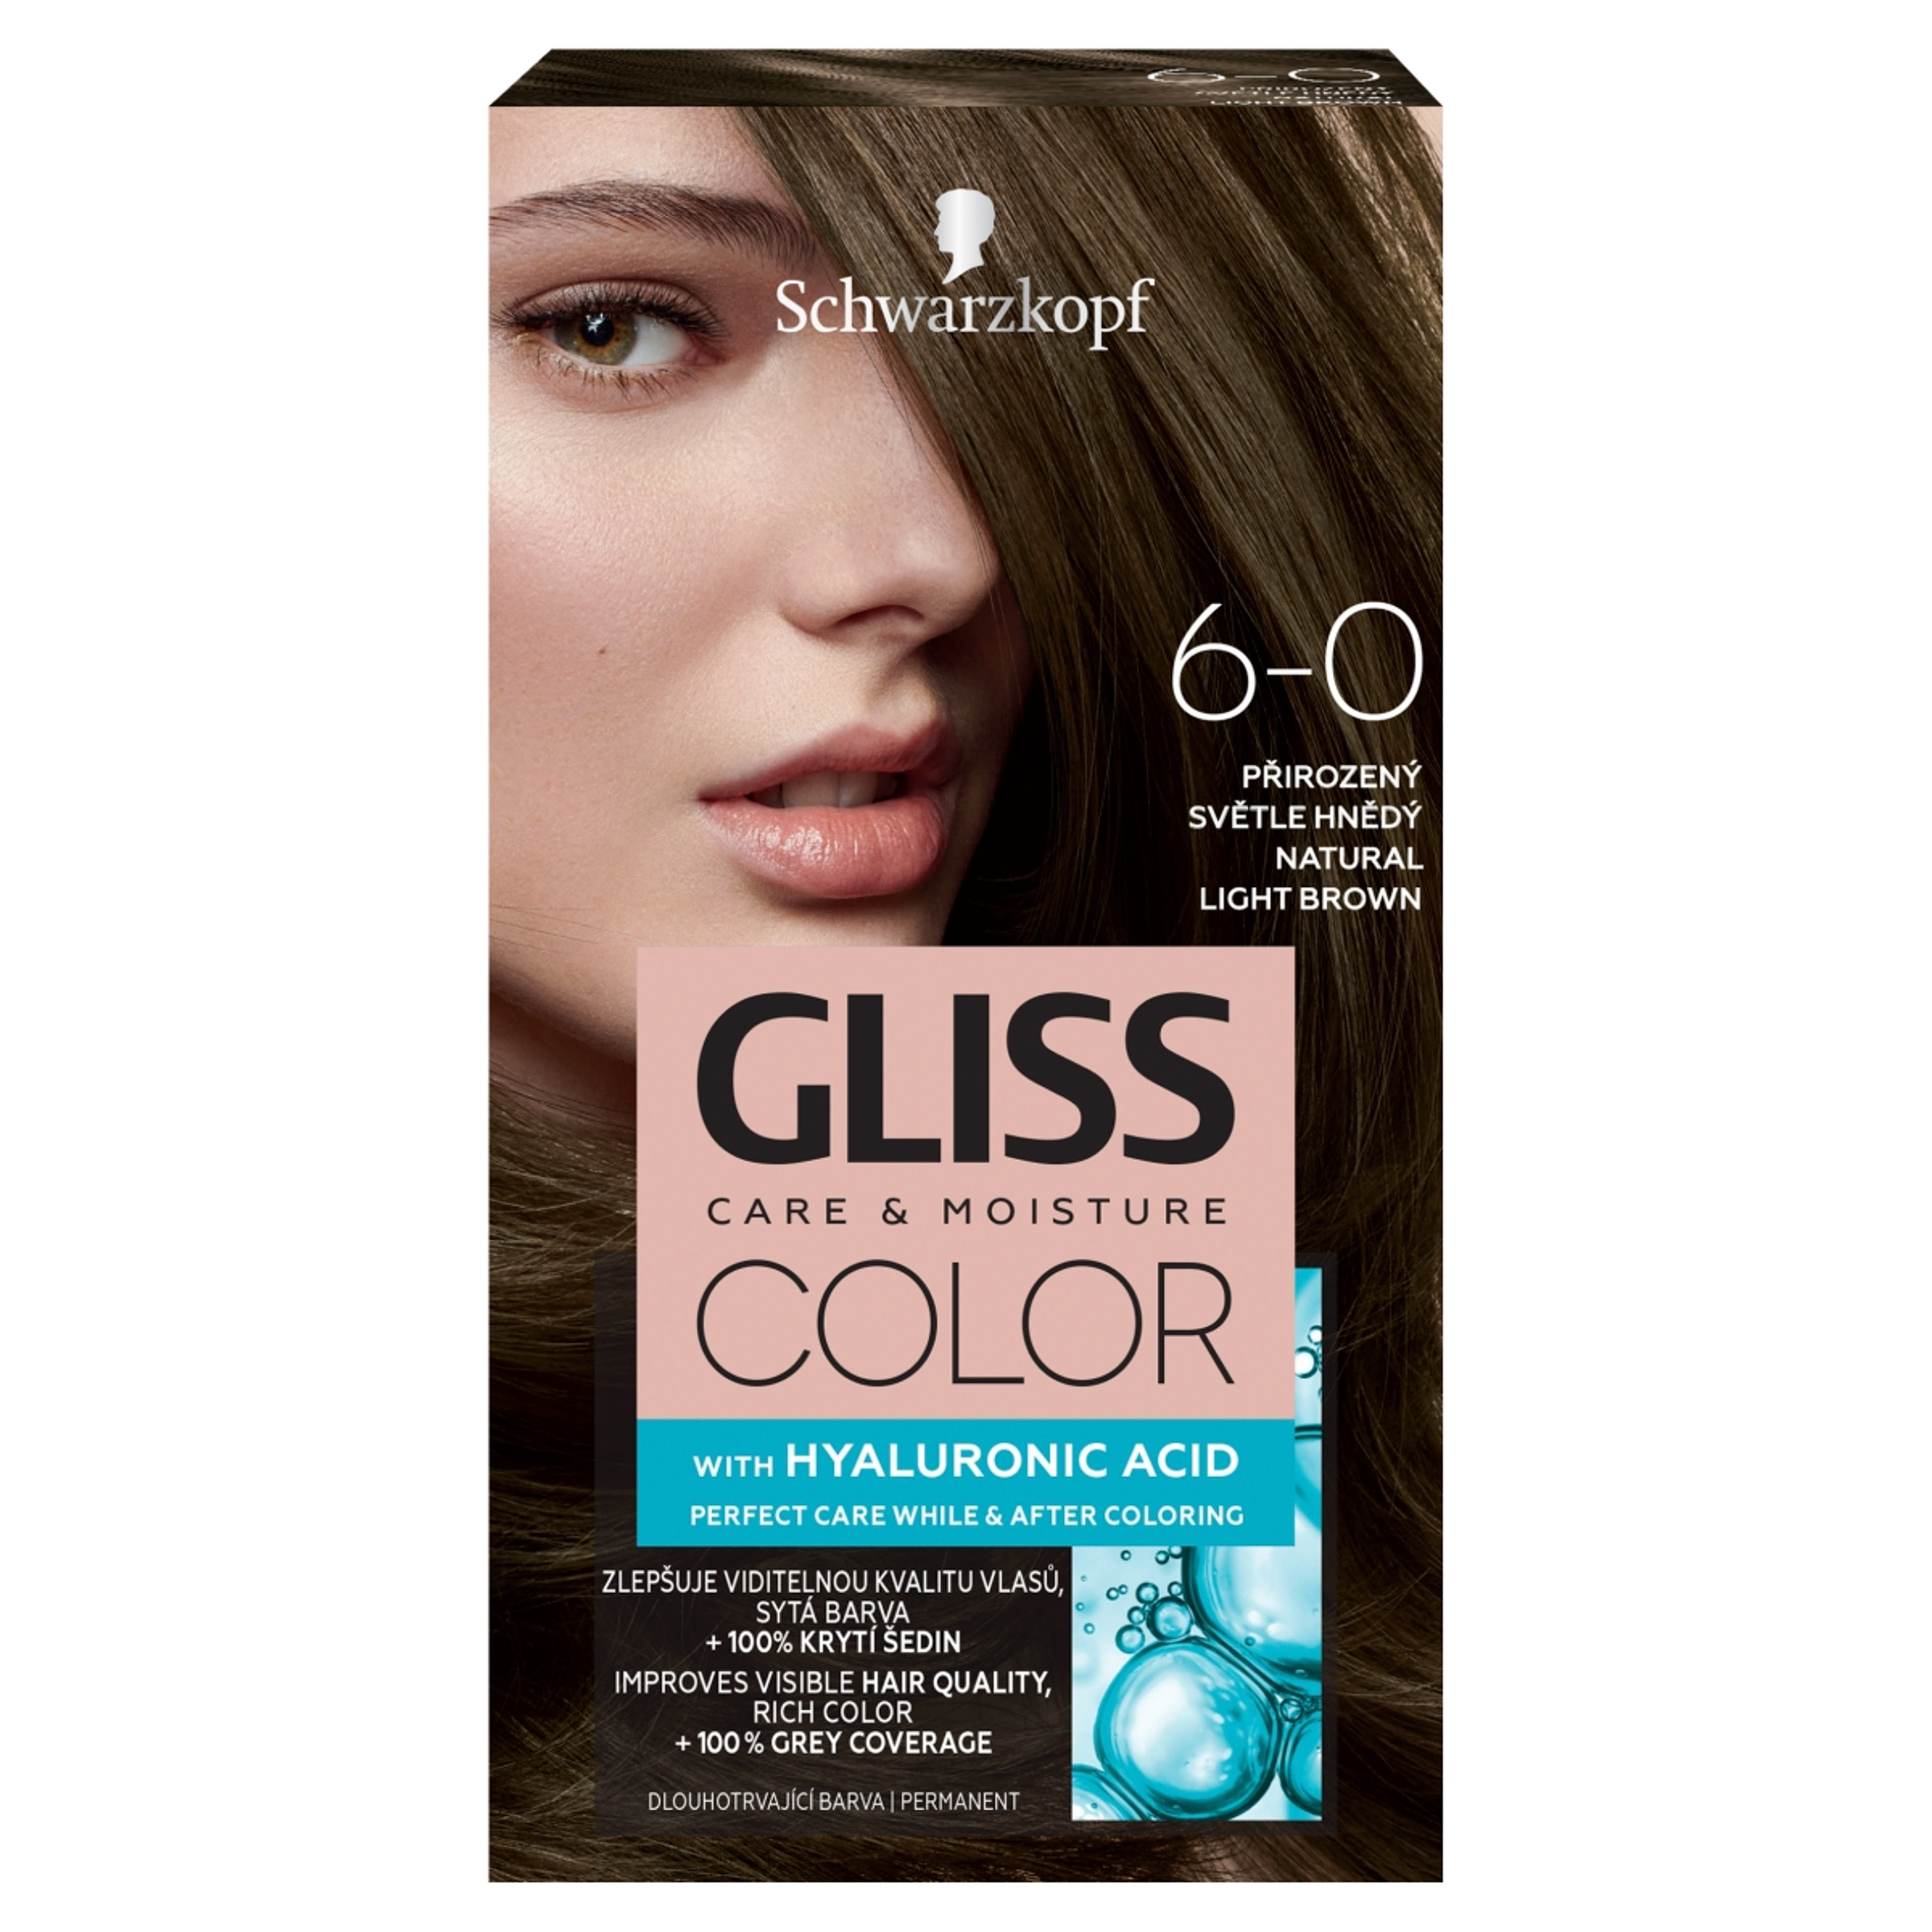 Gliss Color tartós hajfesték 6-0 Természetes világosbarna - 1 db-1